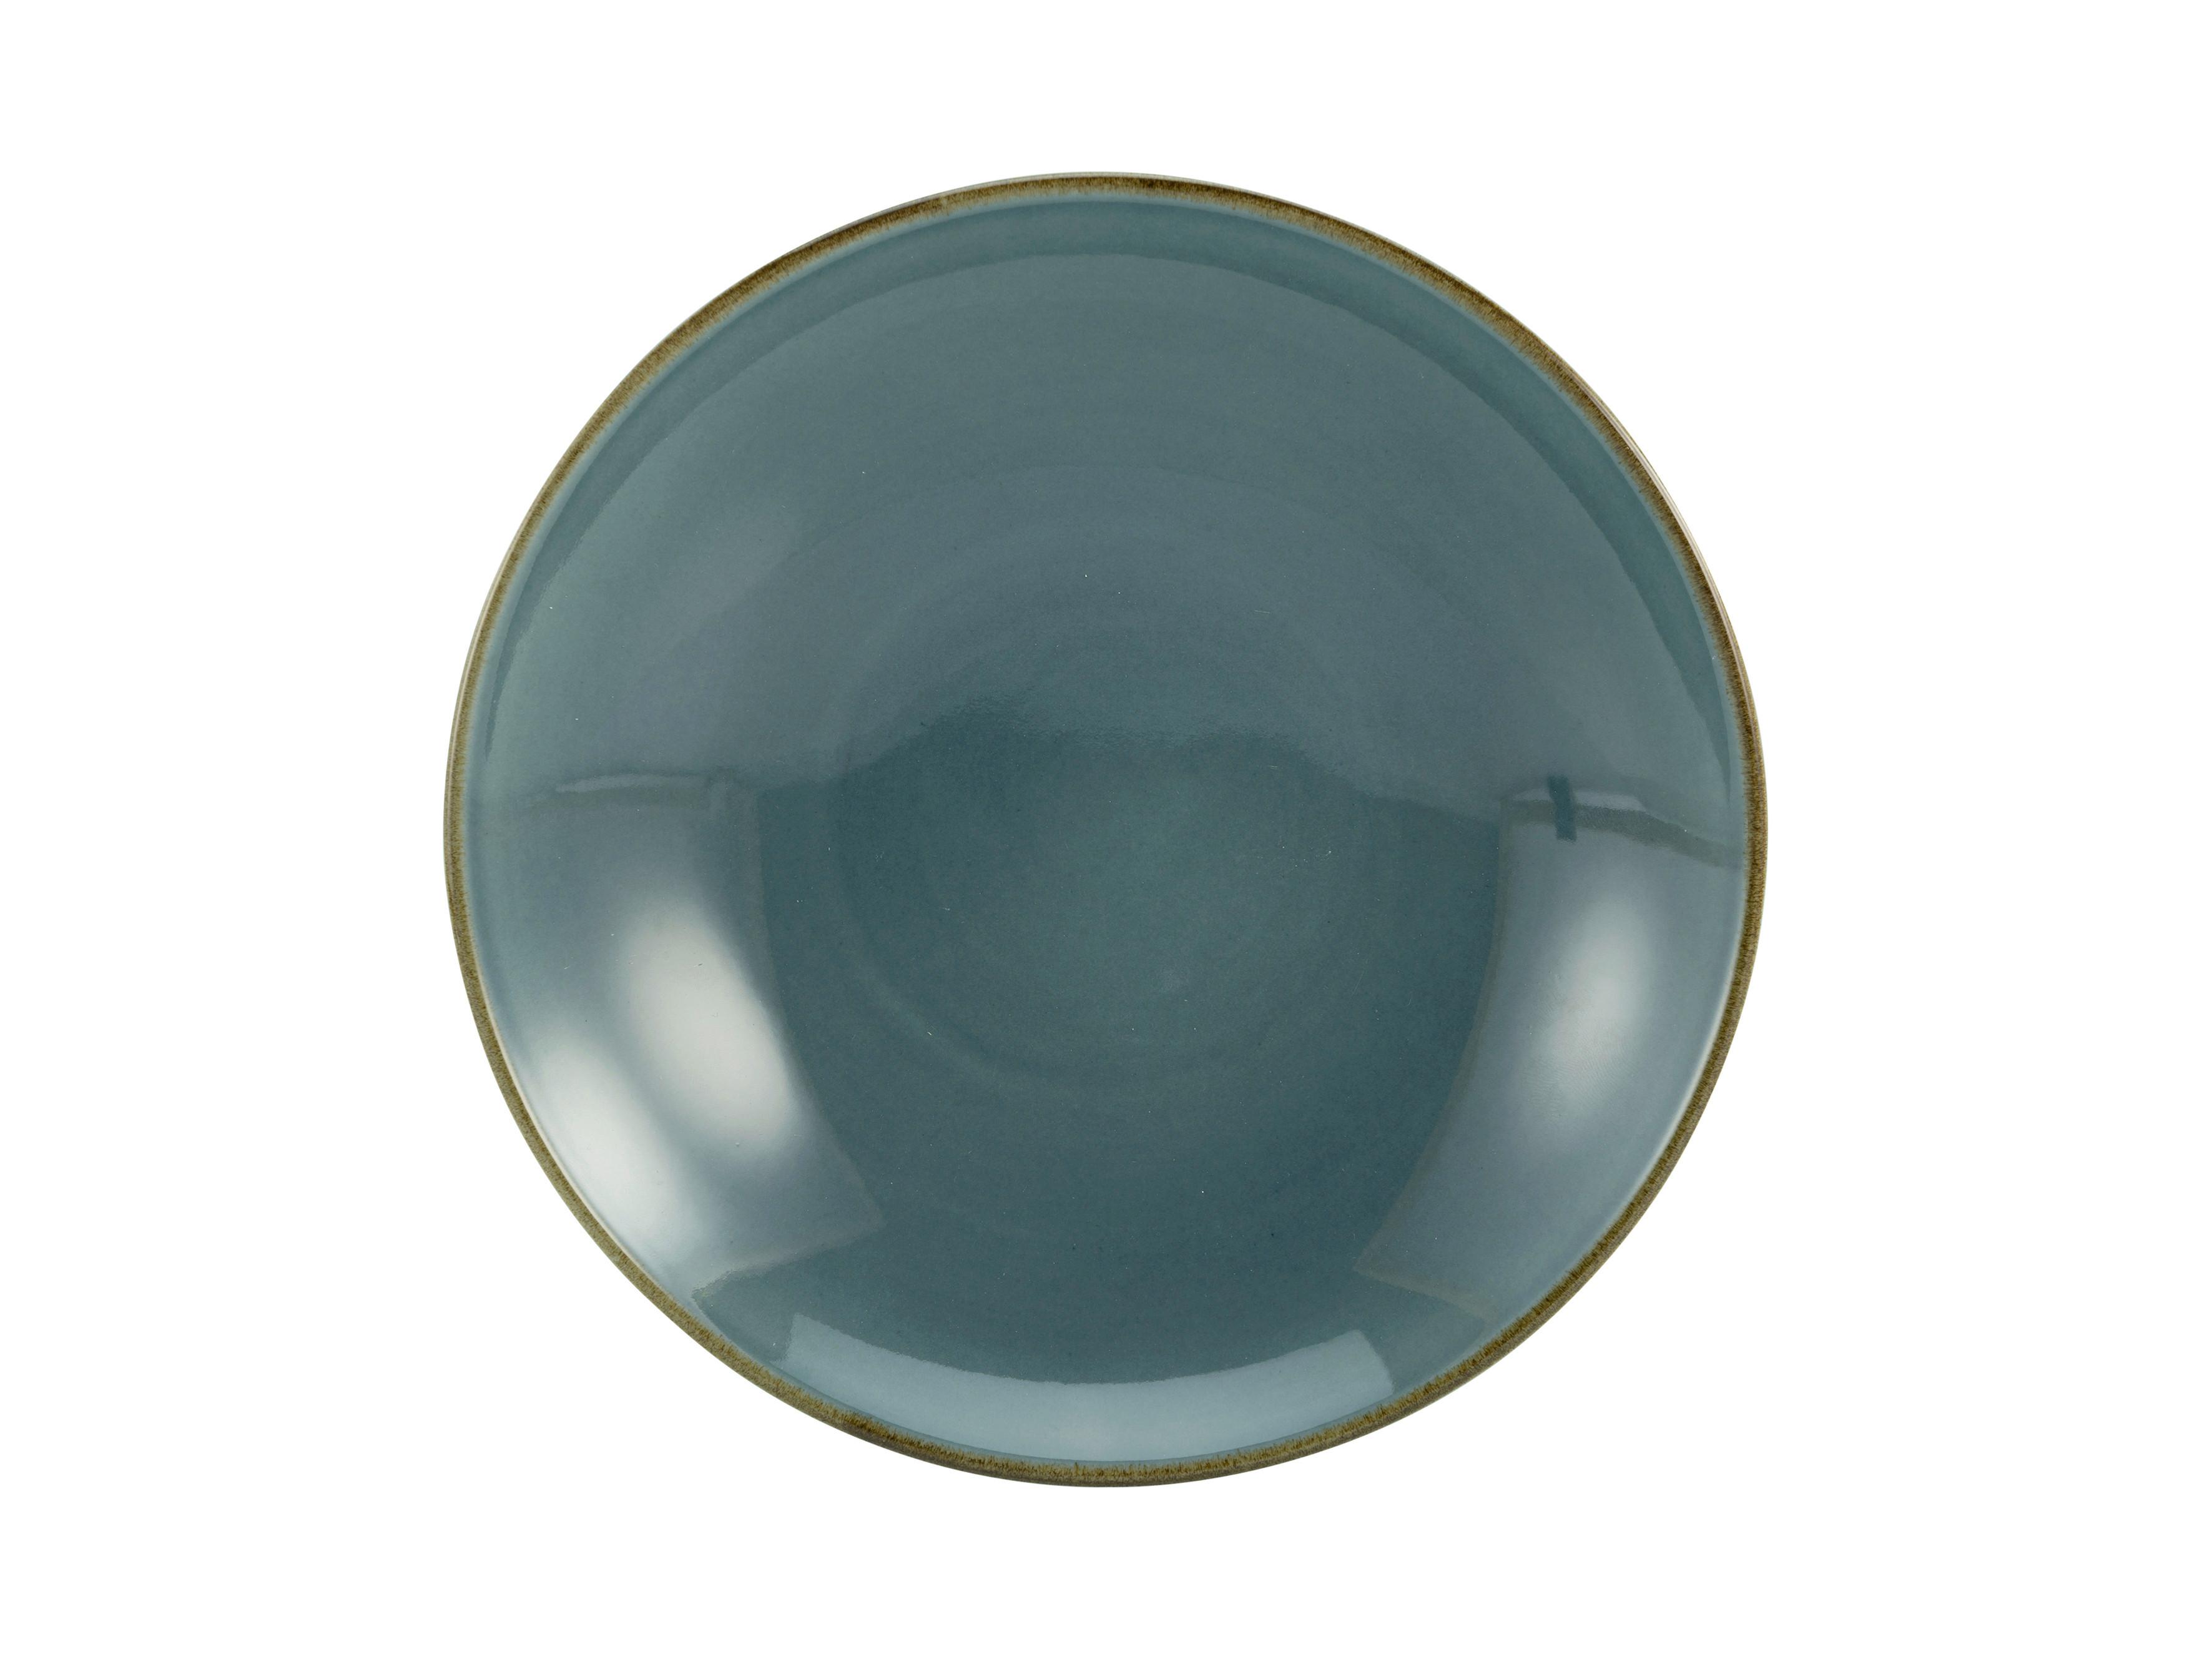 TALERZ DO ZUPY LINEN - niebieski, ceramika (22/22/4cm) - Premium Living